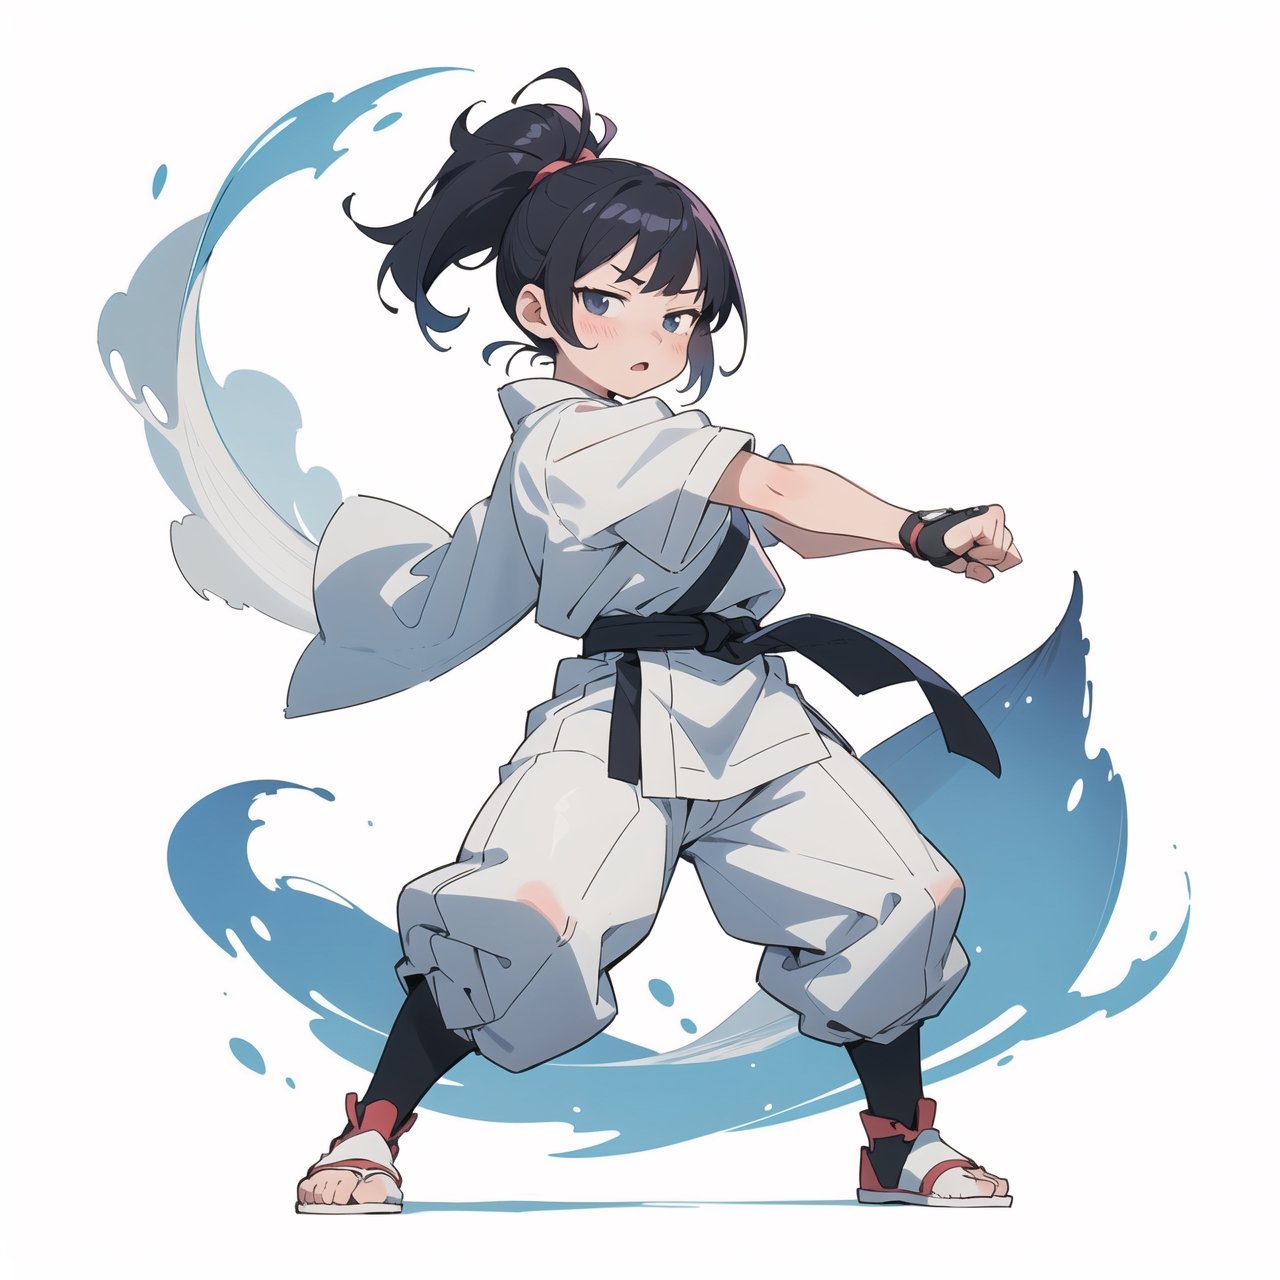 anime illustration of a cute chubby martial artist girl, fighting stance, anime, shortstack,shortstack